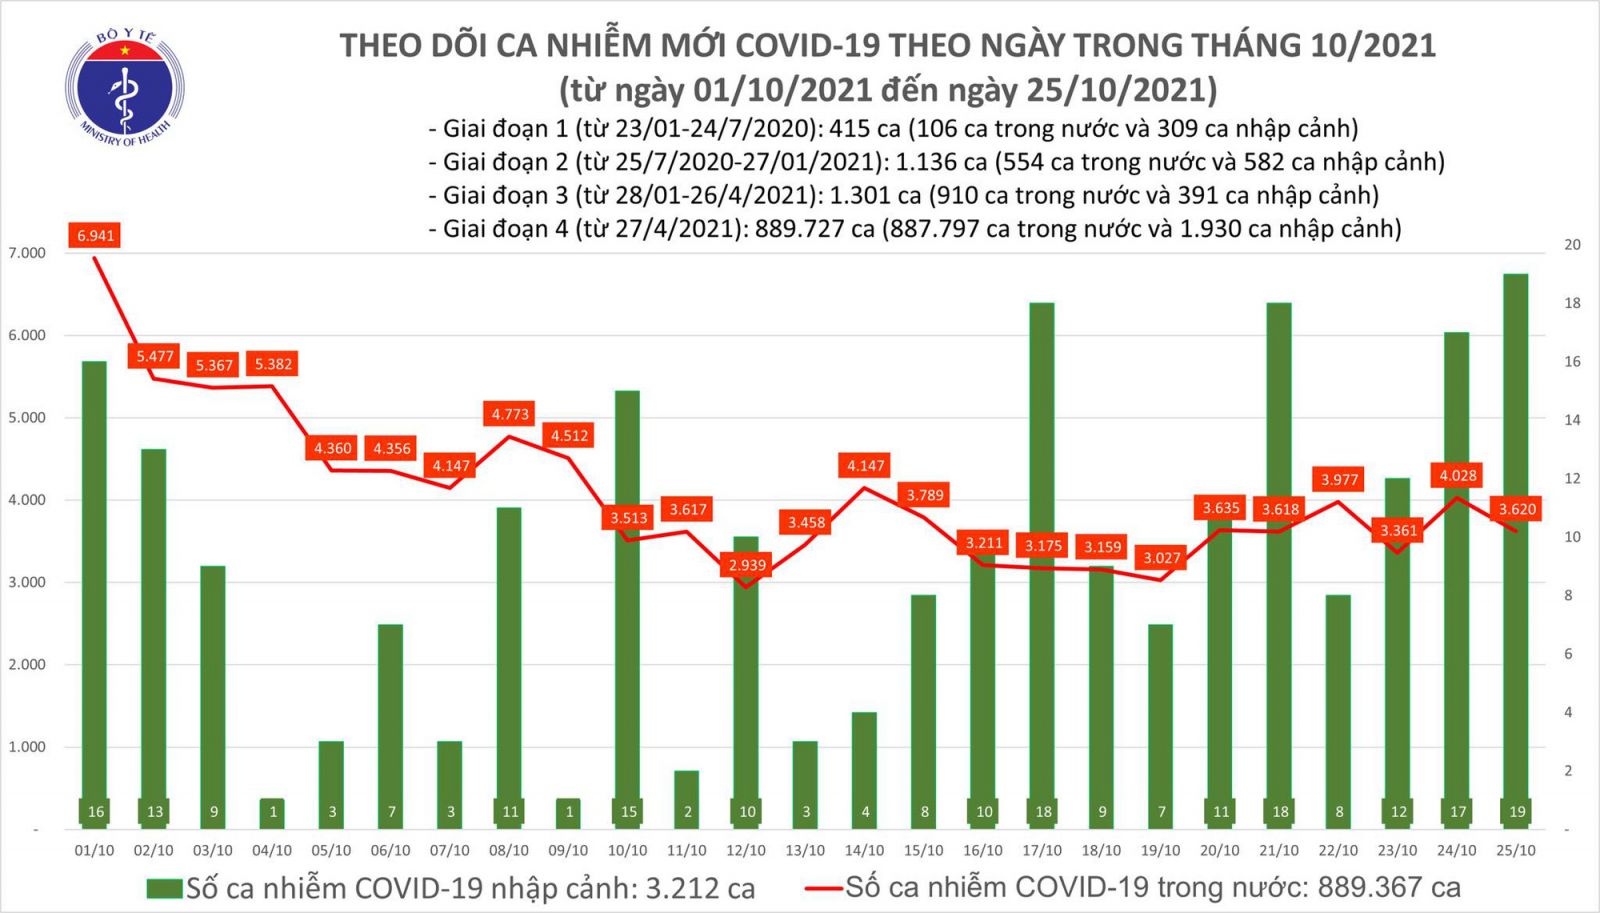 Ngày 25/10: Có 3.639 ca mắc COVID-19 tại TP HCM và 52 tỉnh, thành; 1.323 bệnh nhân khỏi